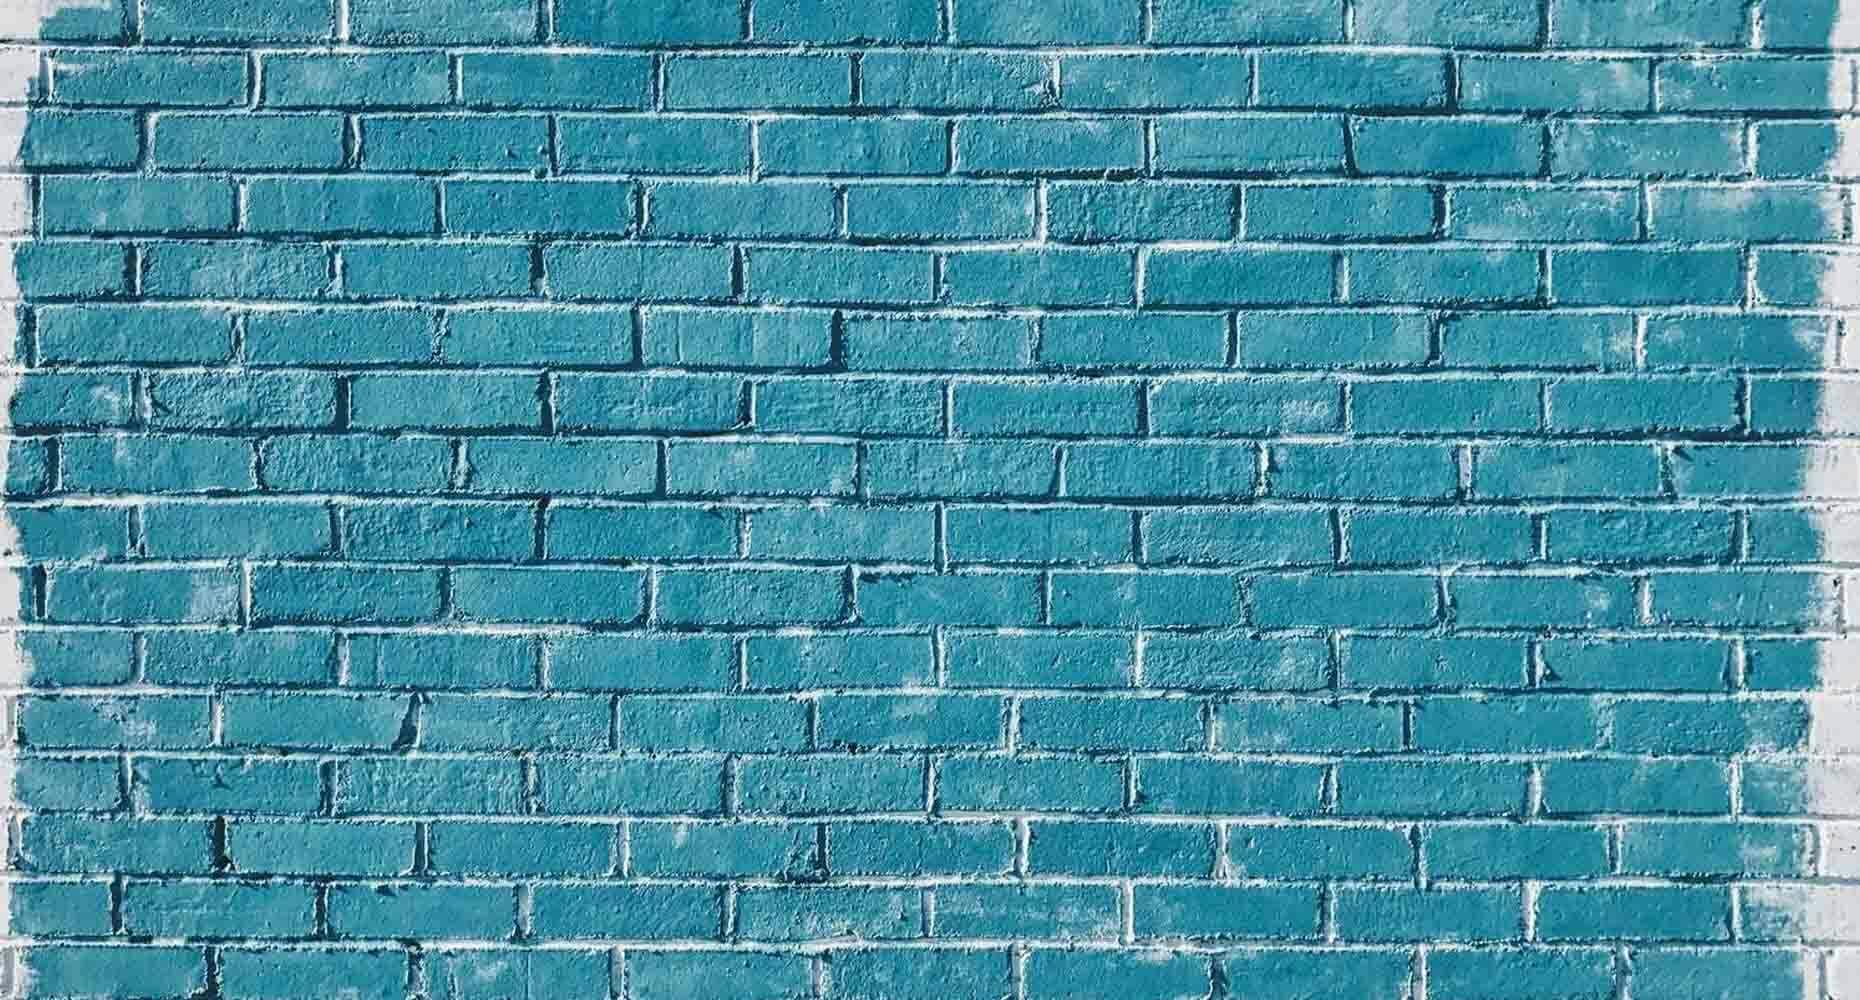 Painted brick wall teal